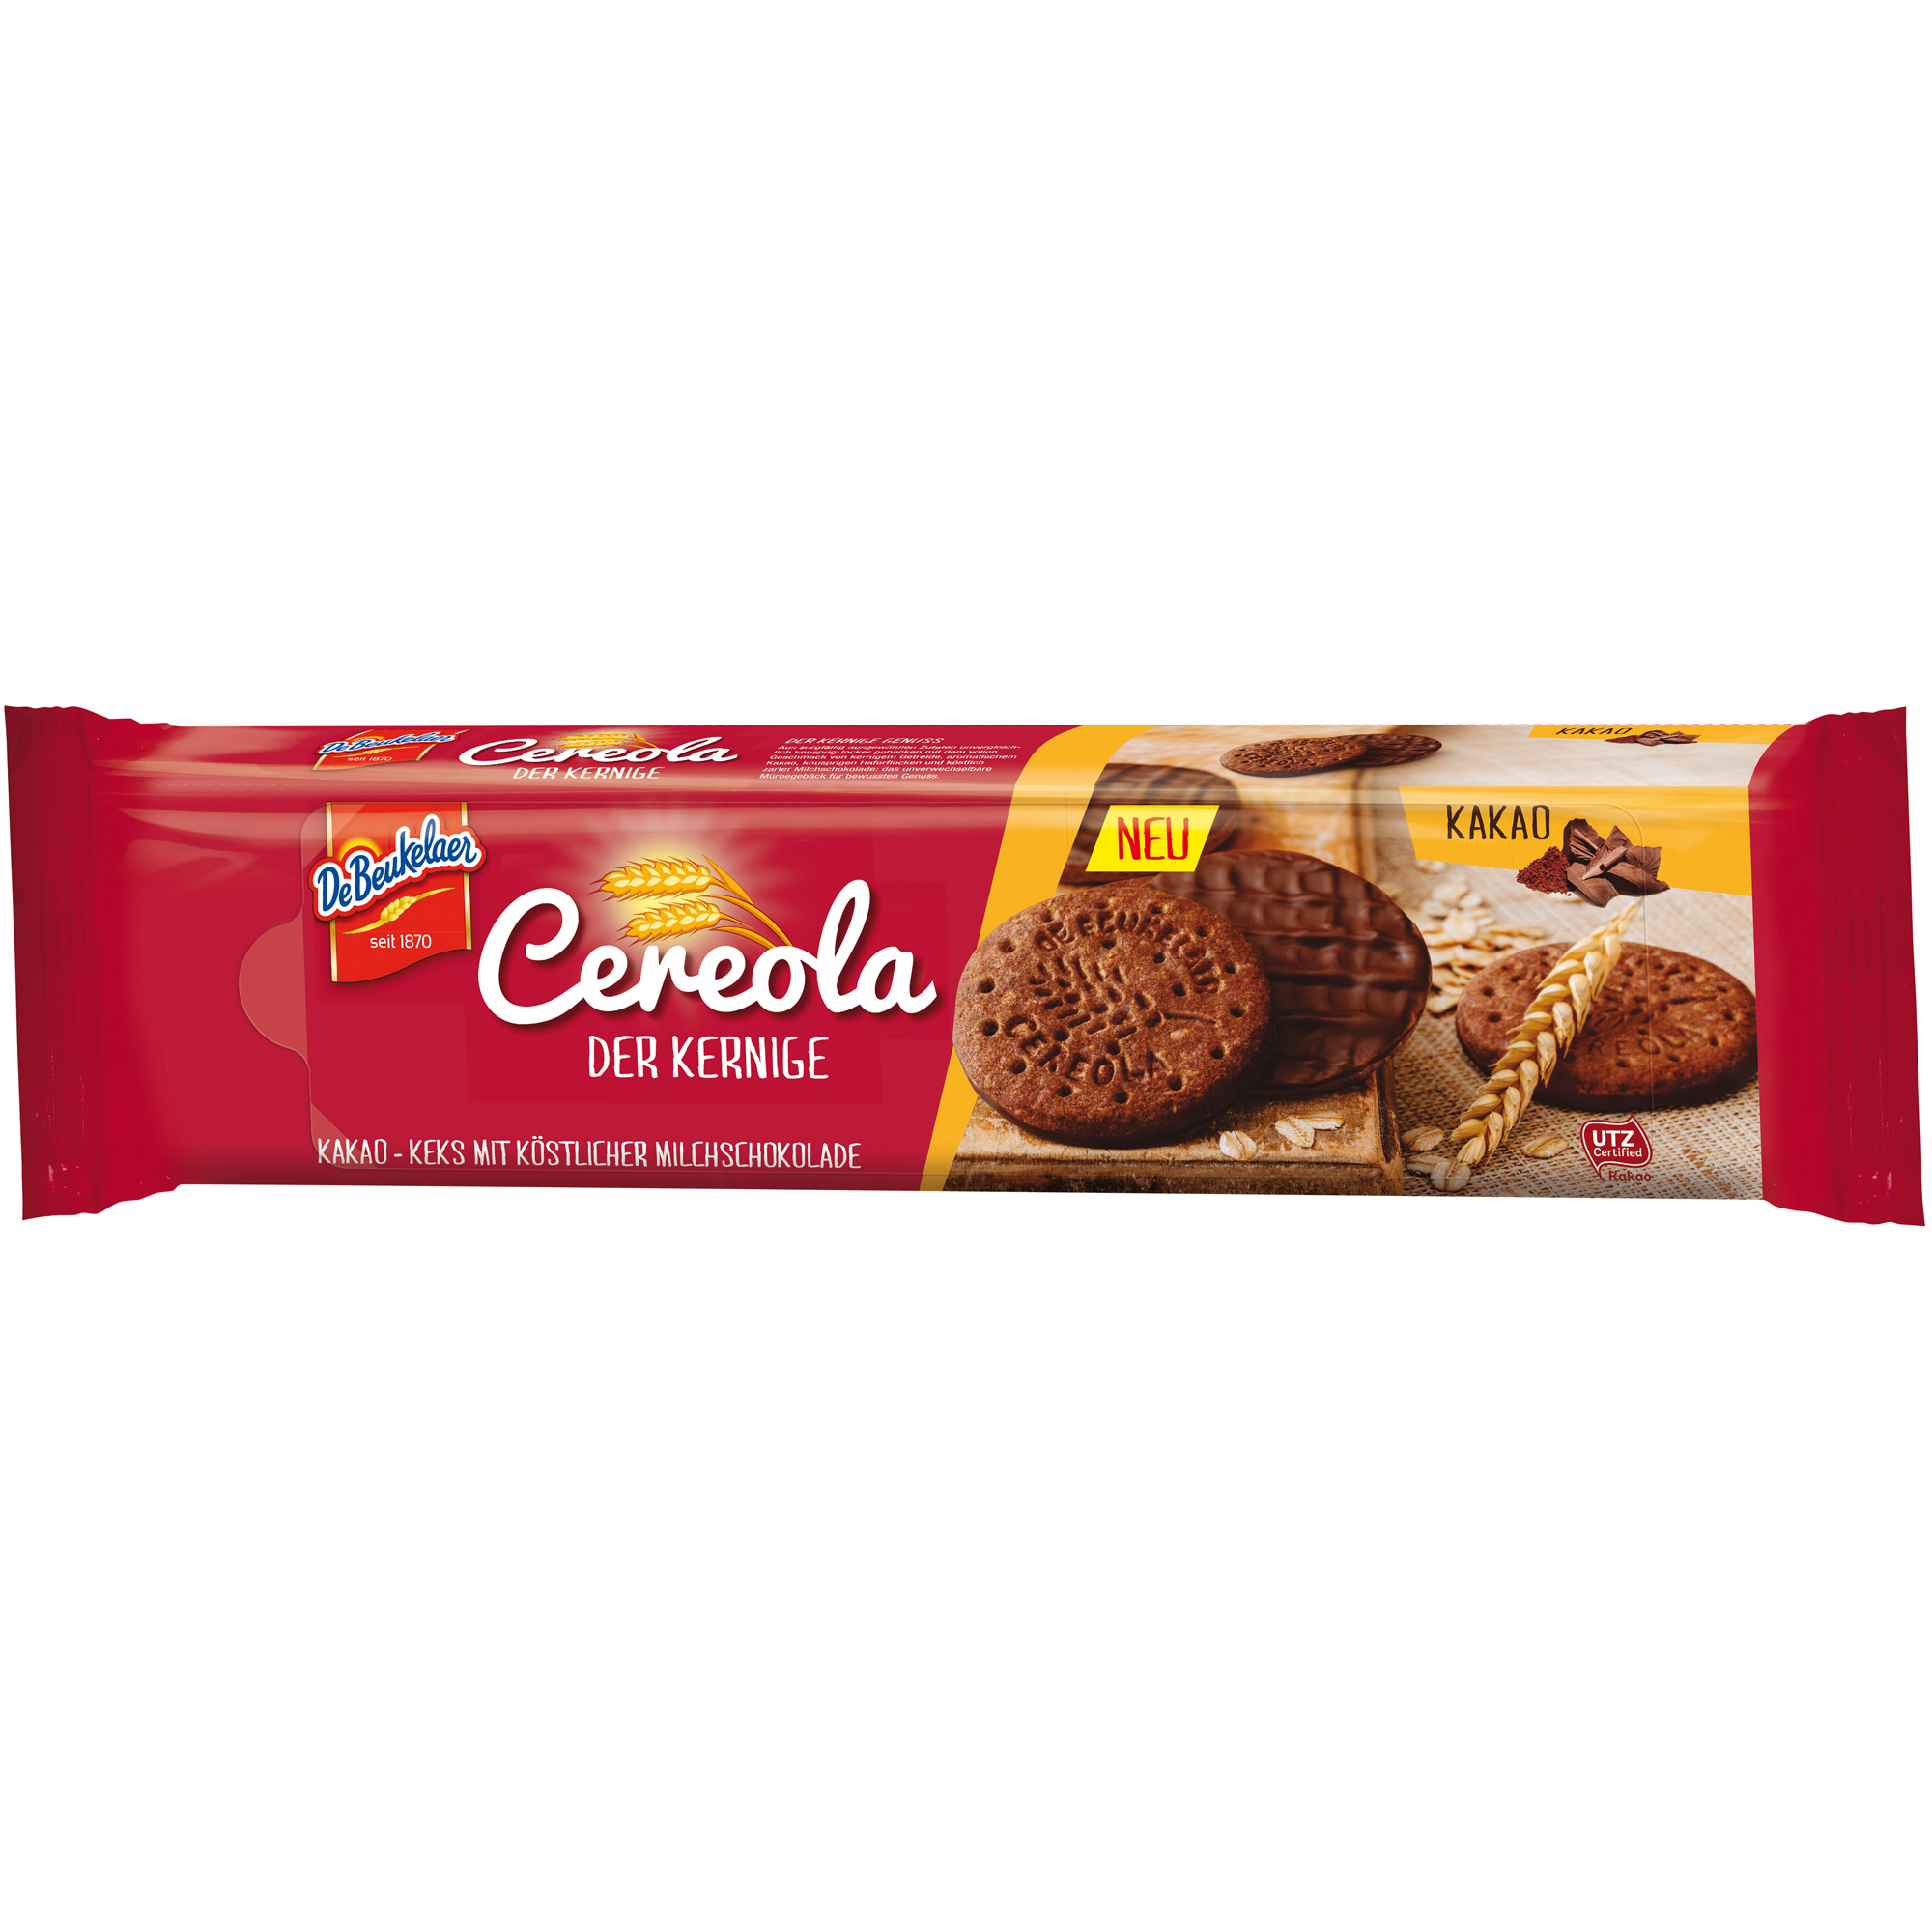 DeBeukelaer Cereola Der Kernige Kakao 150g | Online kaufen im World of ...